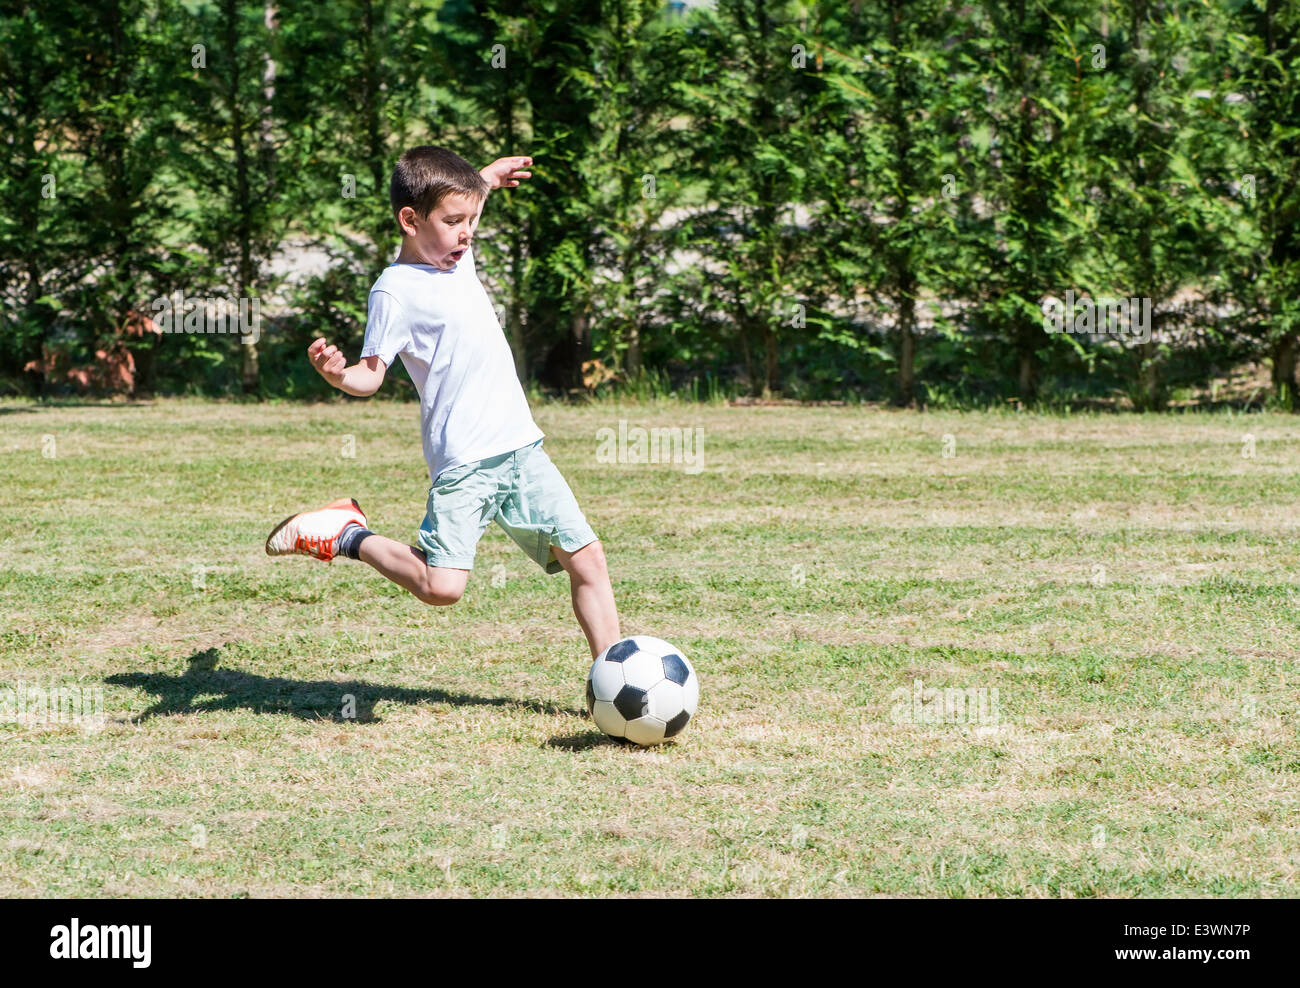 Poco Fútbol Del Juego De Niños En El Parque Foto de archivo - Imagen de  meta, muchacho: 129732588